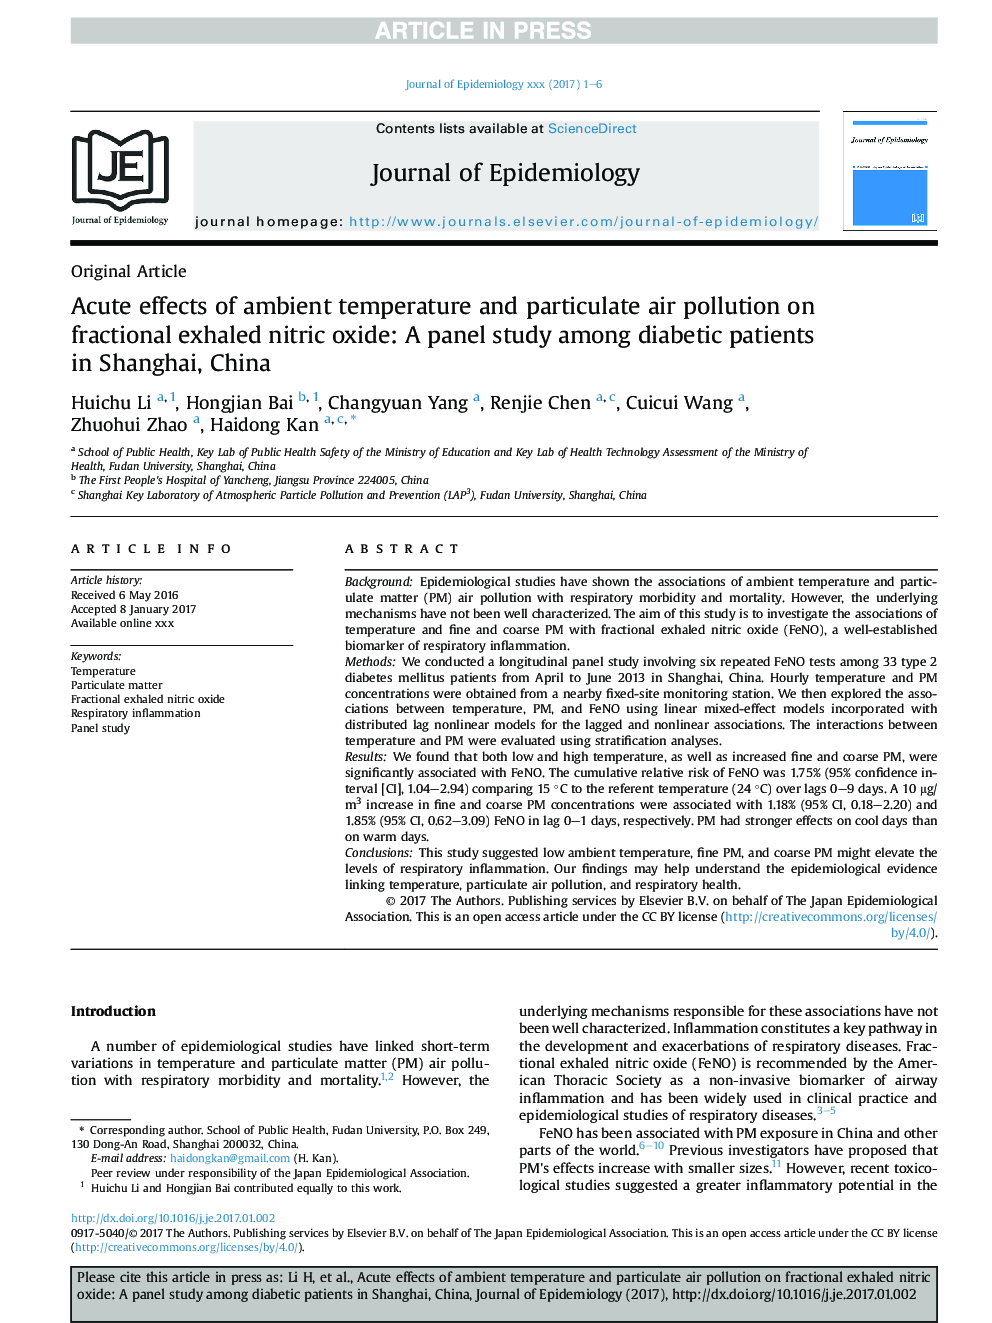 اثرات حادثه دمای محیط و آلودگی هوا بر میزان اکسید نیتریک اکسید کسر شده: یک مطالعه پانل در میان بیماران دیابتی در شانگهای، چین 